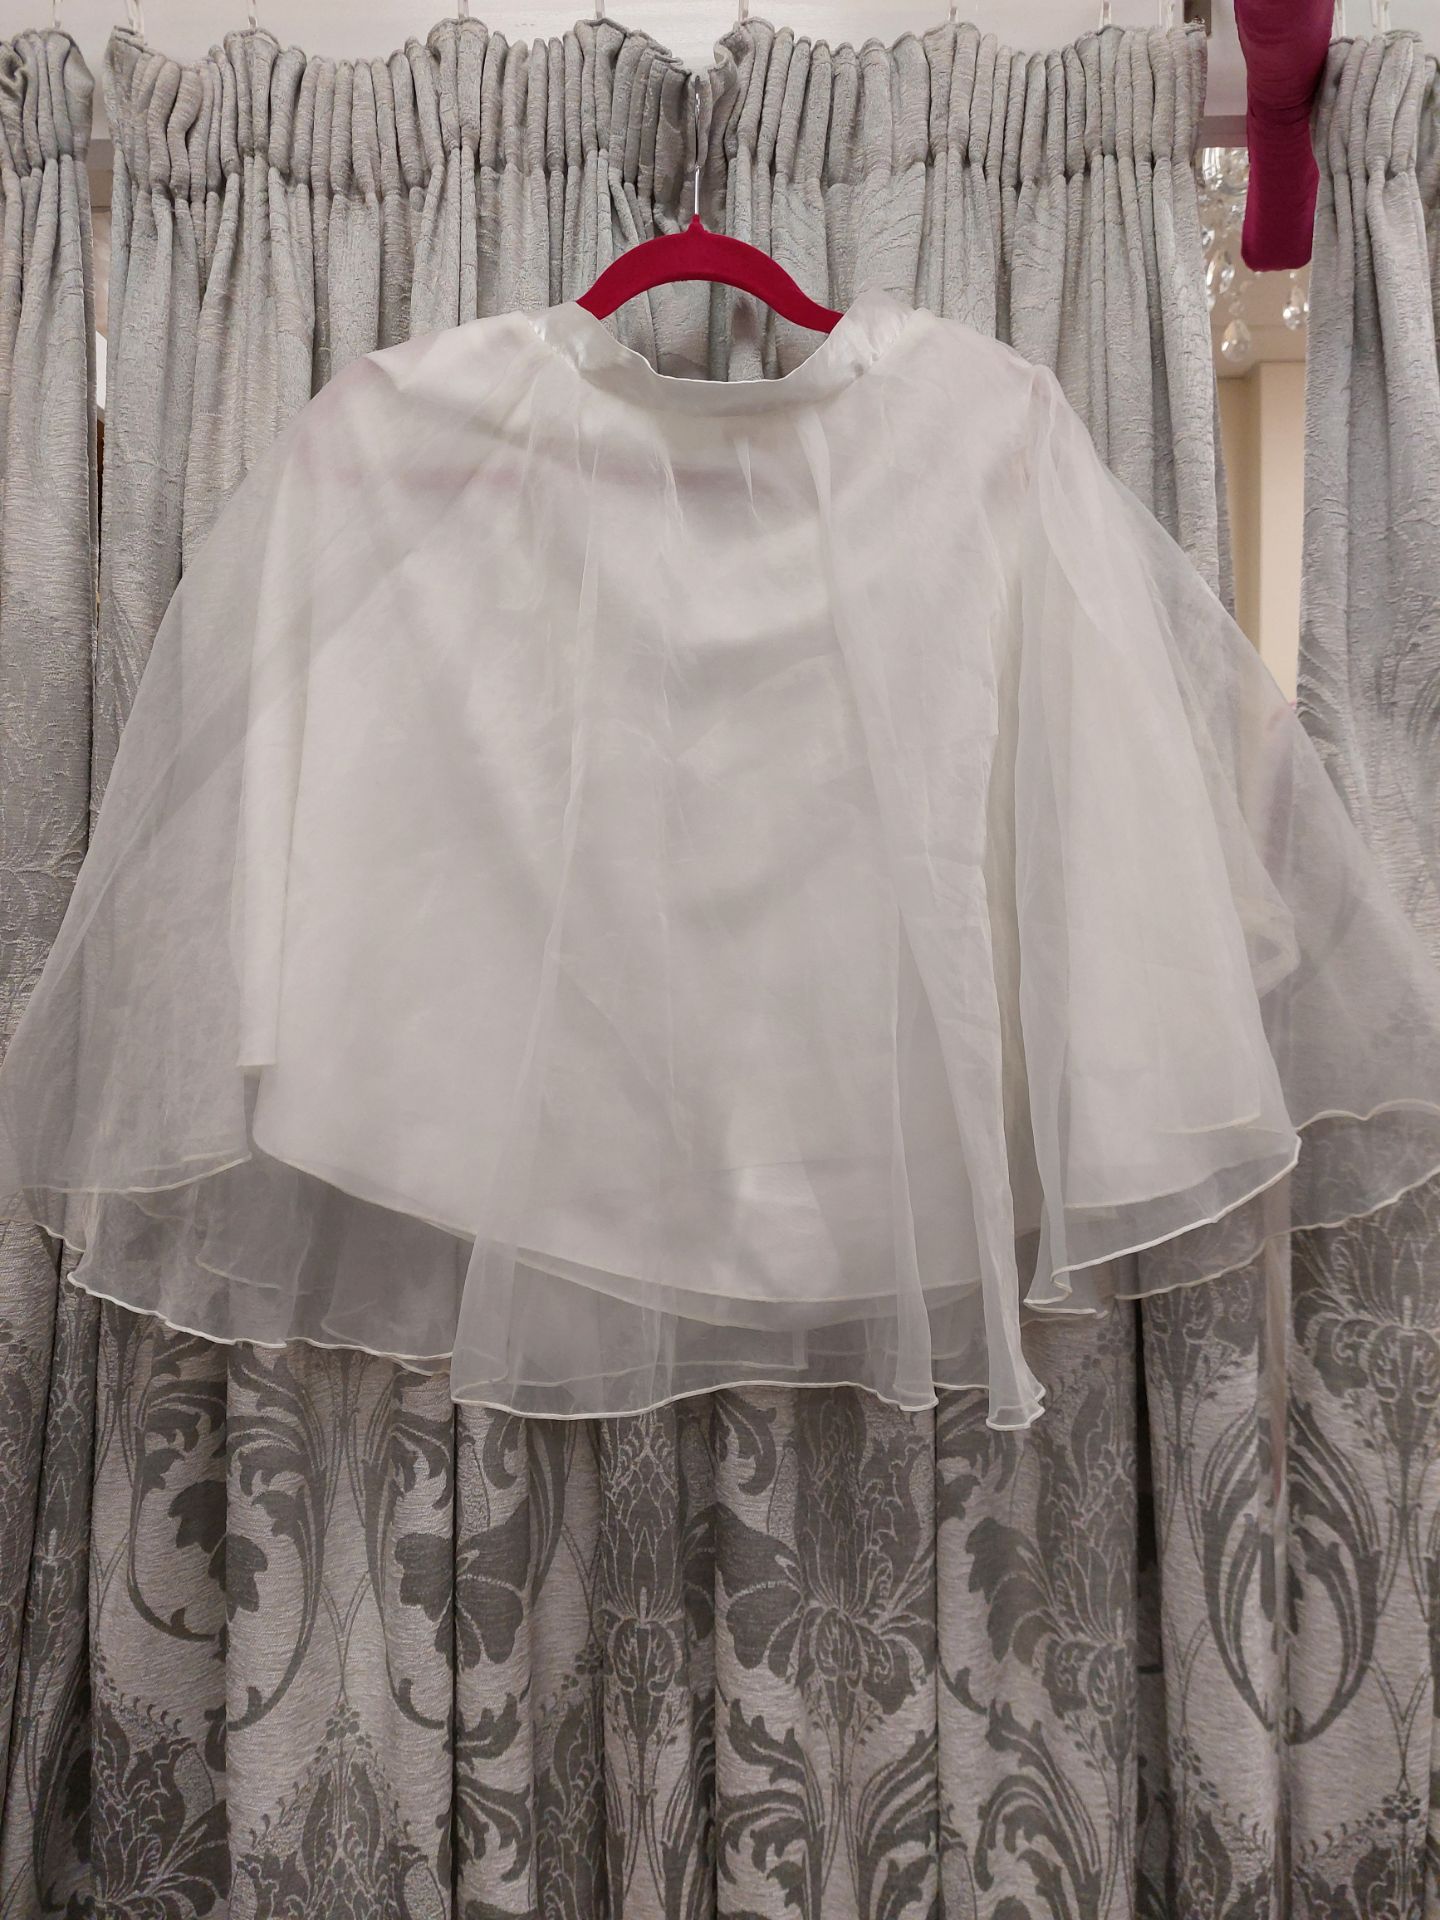 White Childs Petticoat Or Skirt